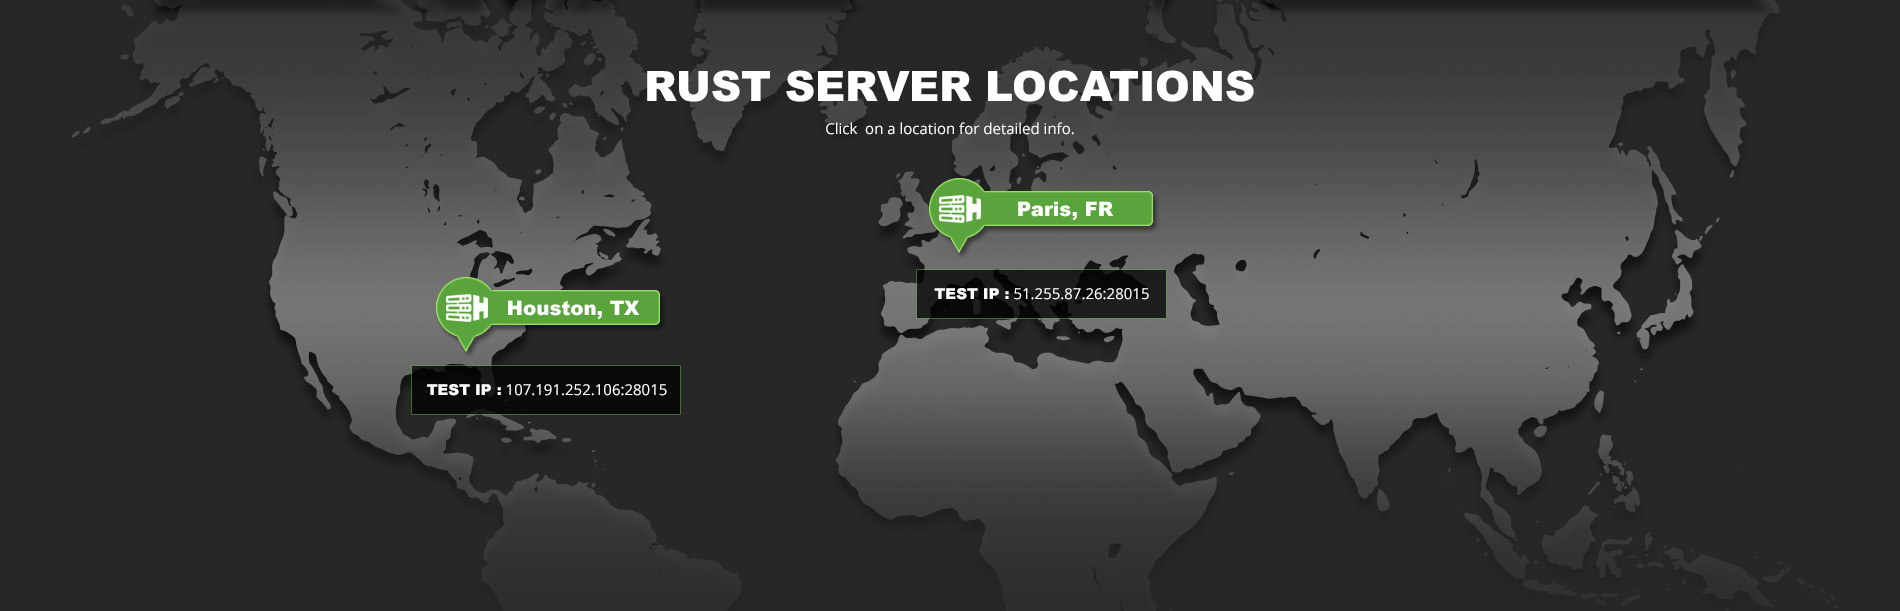 Test servers